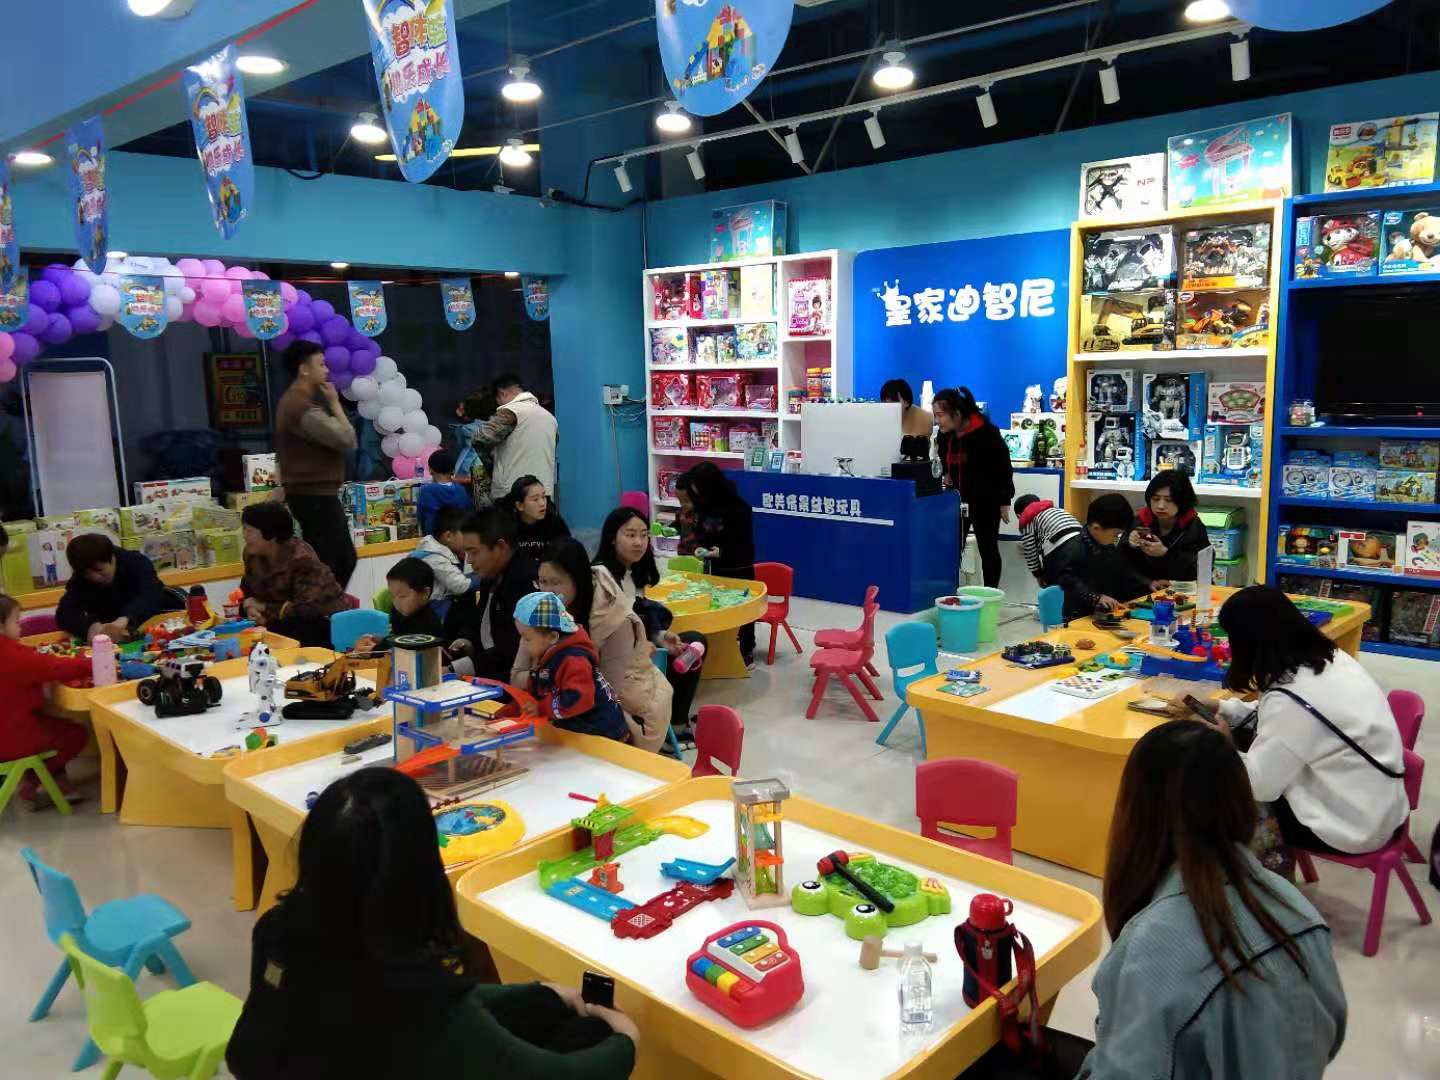 皇家迪智尼玩具加盟店为湖北加油|全新健康营销